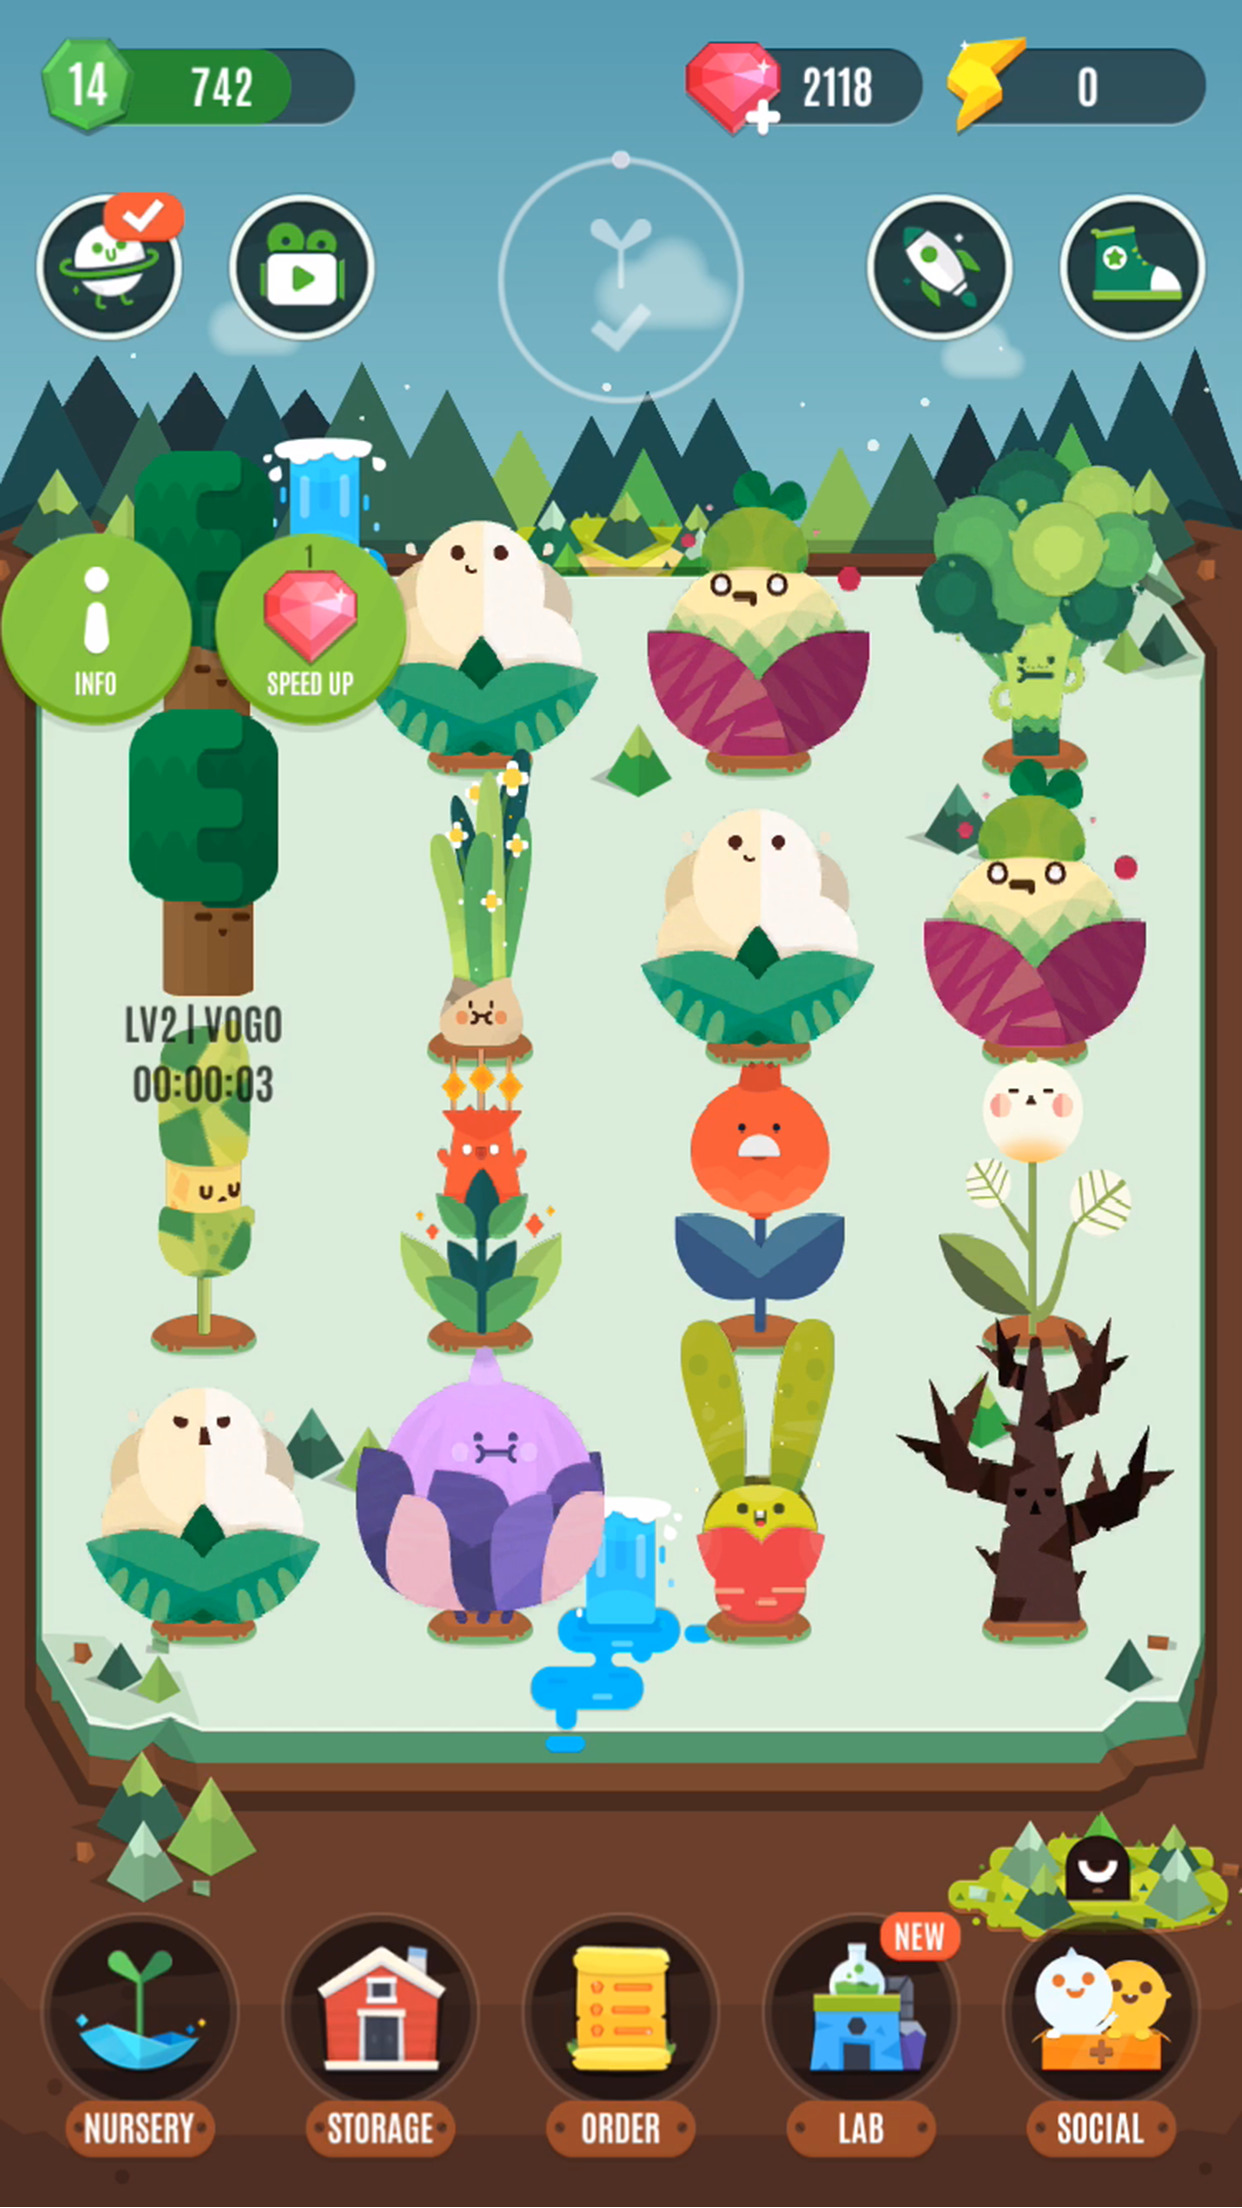 口袋植物：Pocket Plants有哪些活动？求活动介绍